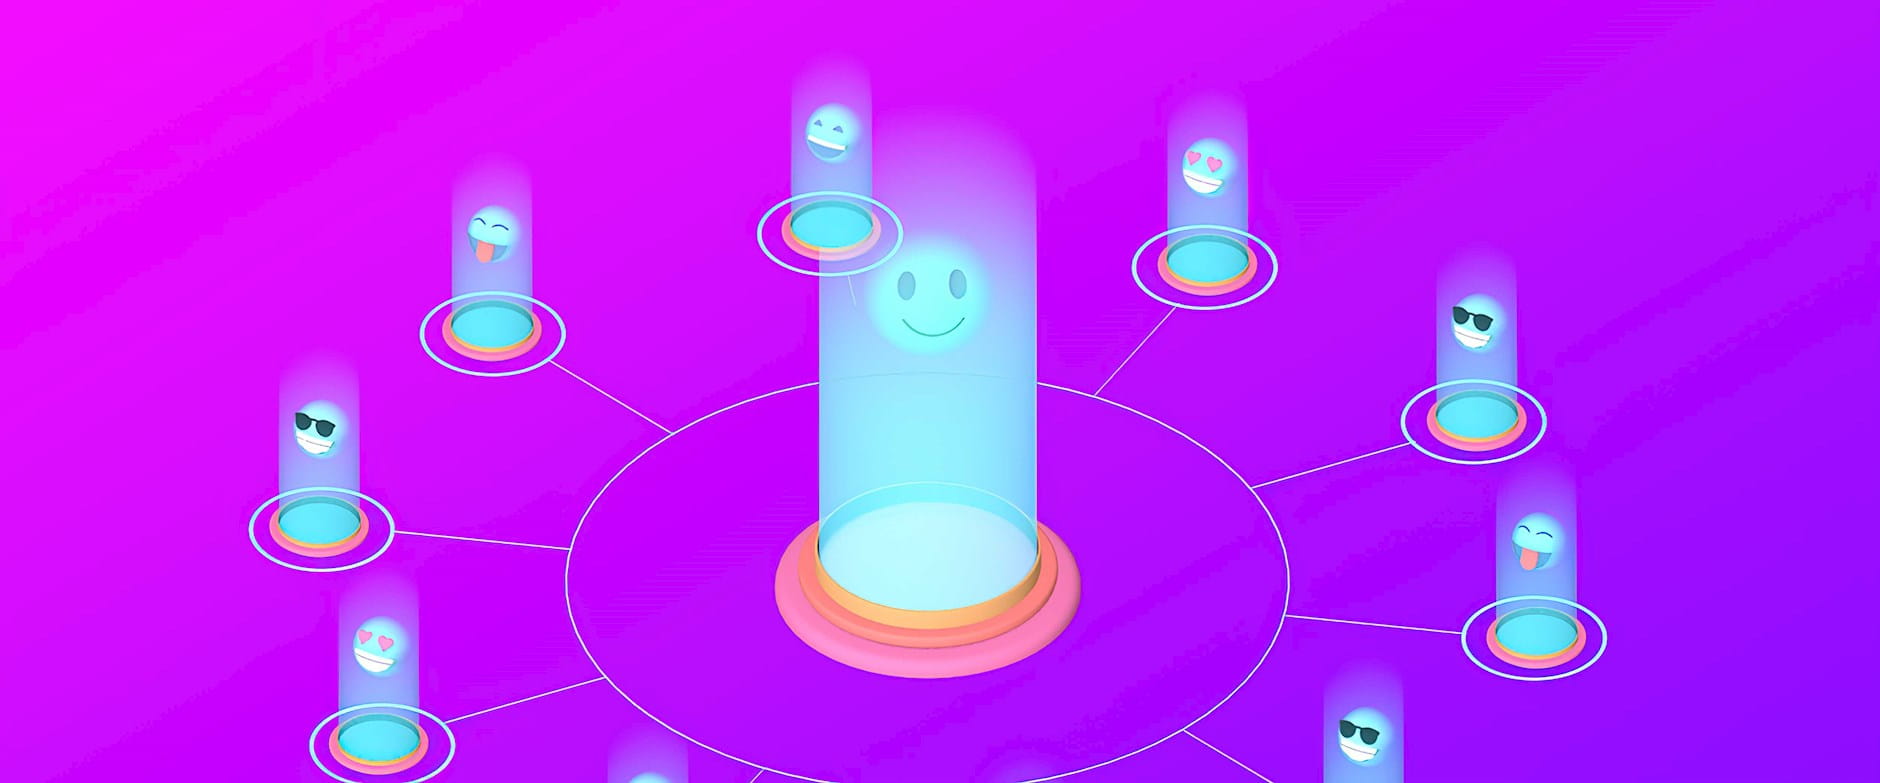 Emojis over lit circles